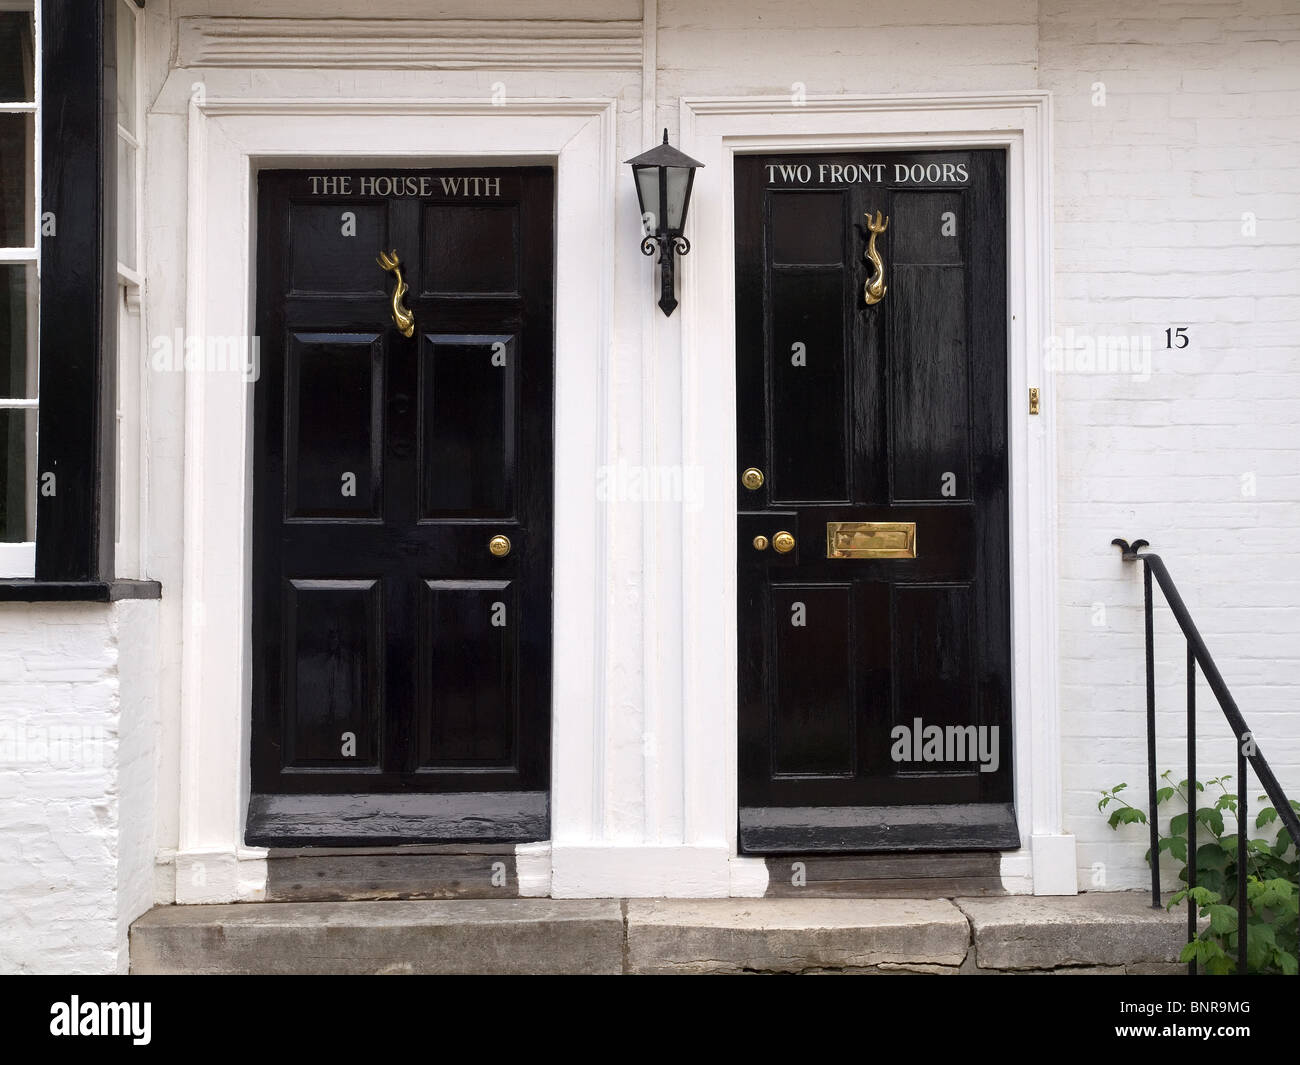 Casa con dos puertas delanteras fotografías e imágenes de alta resolución -  Alamy